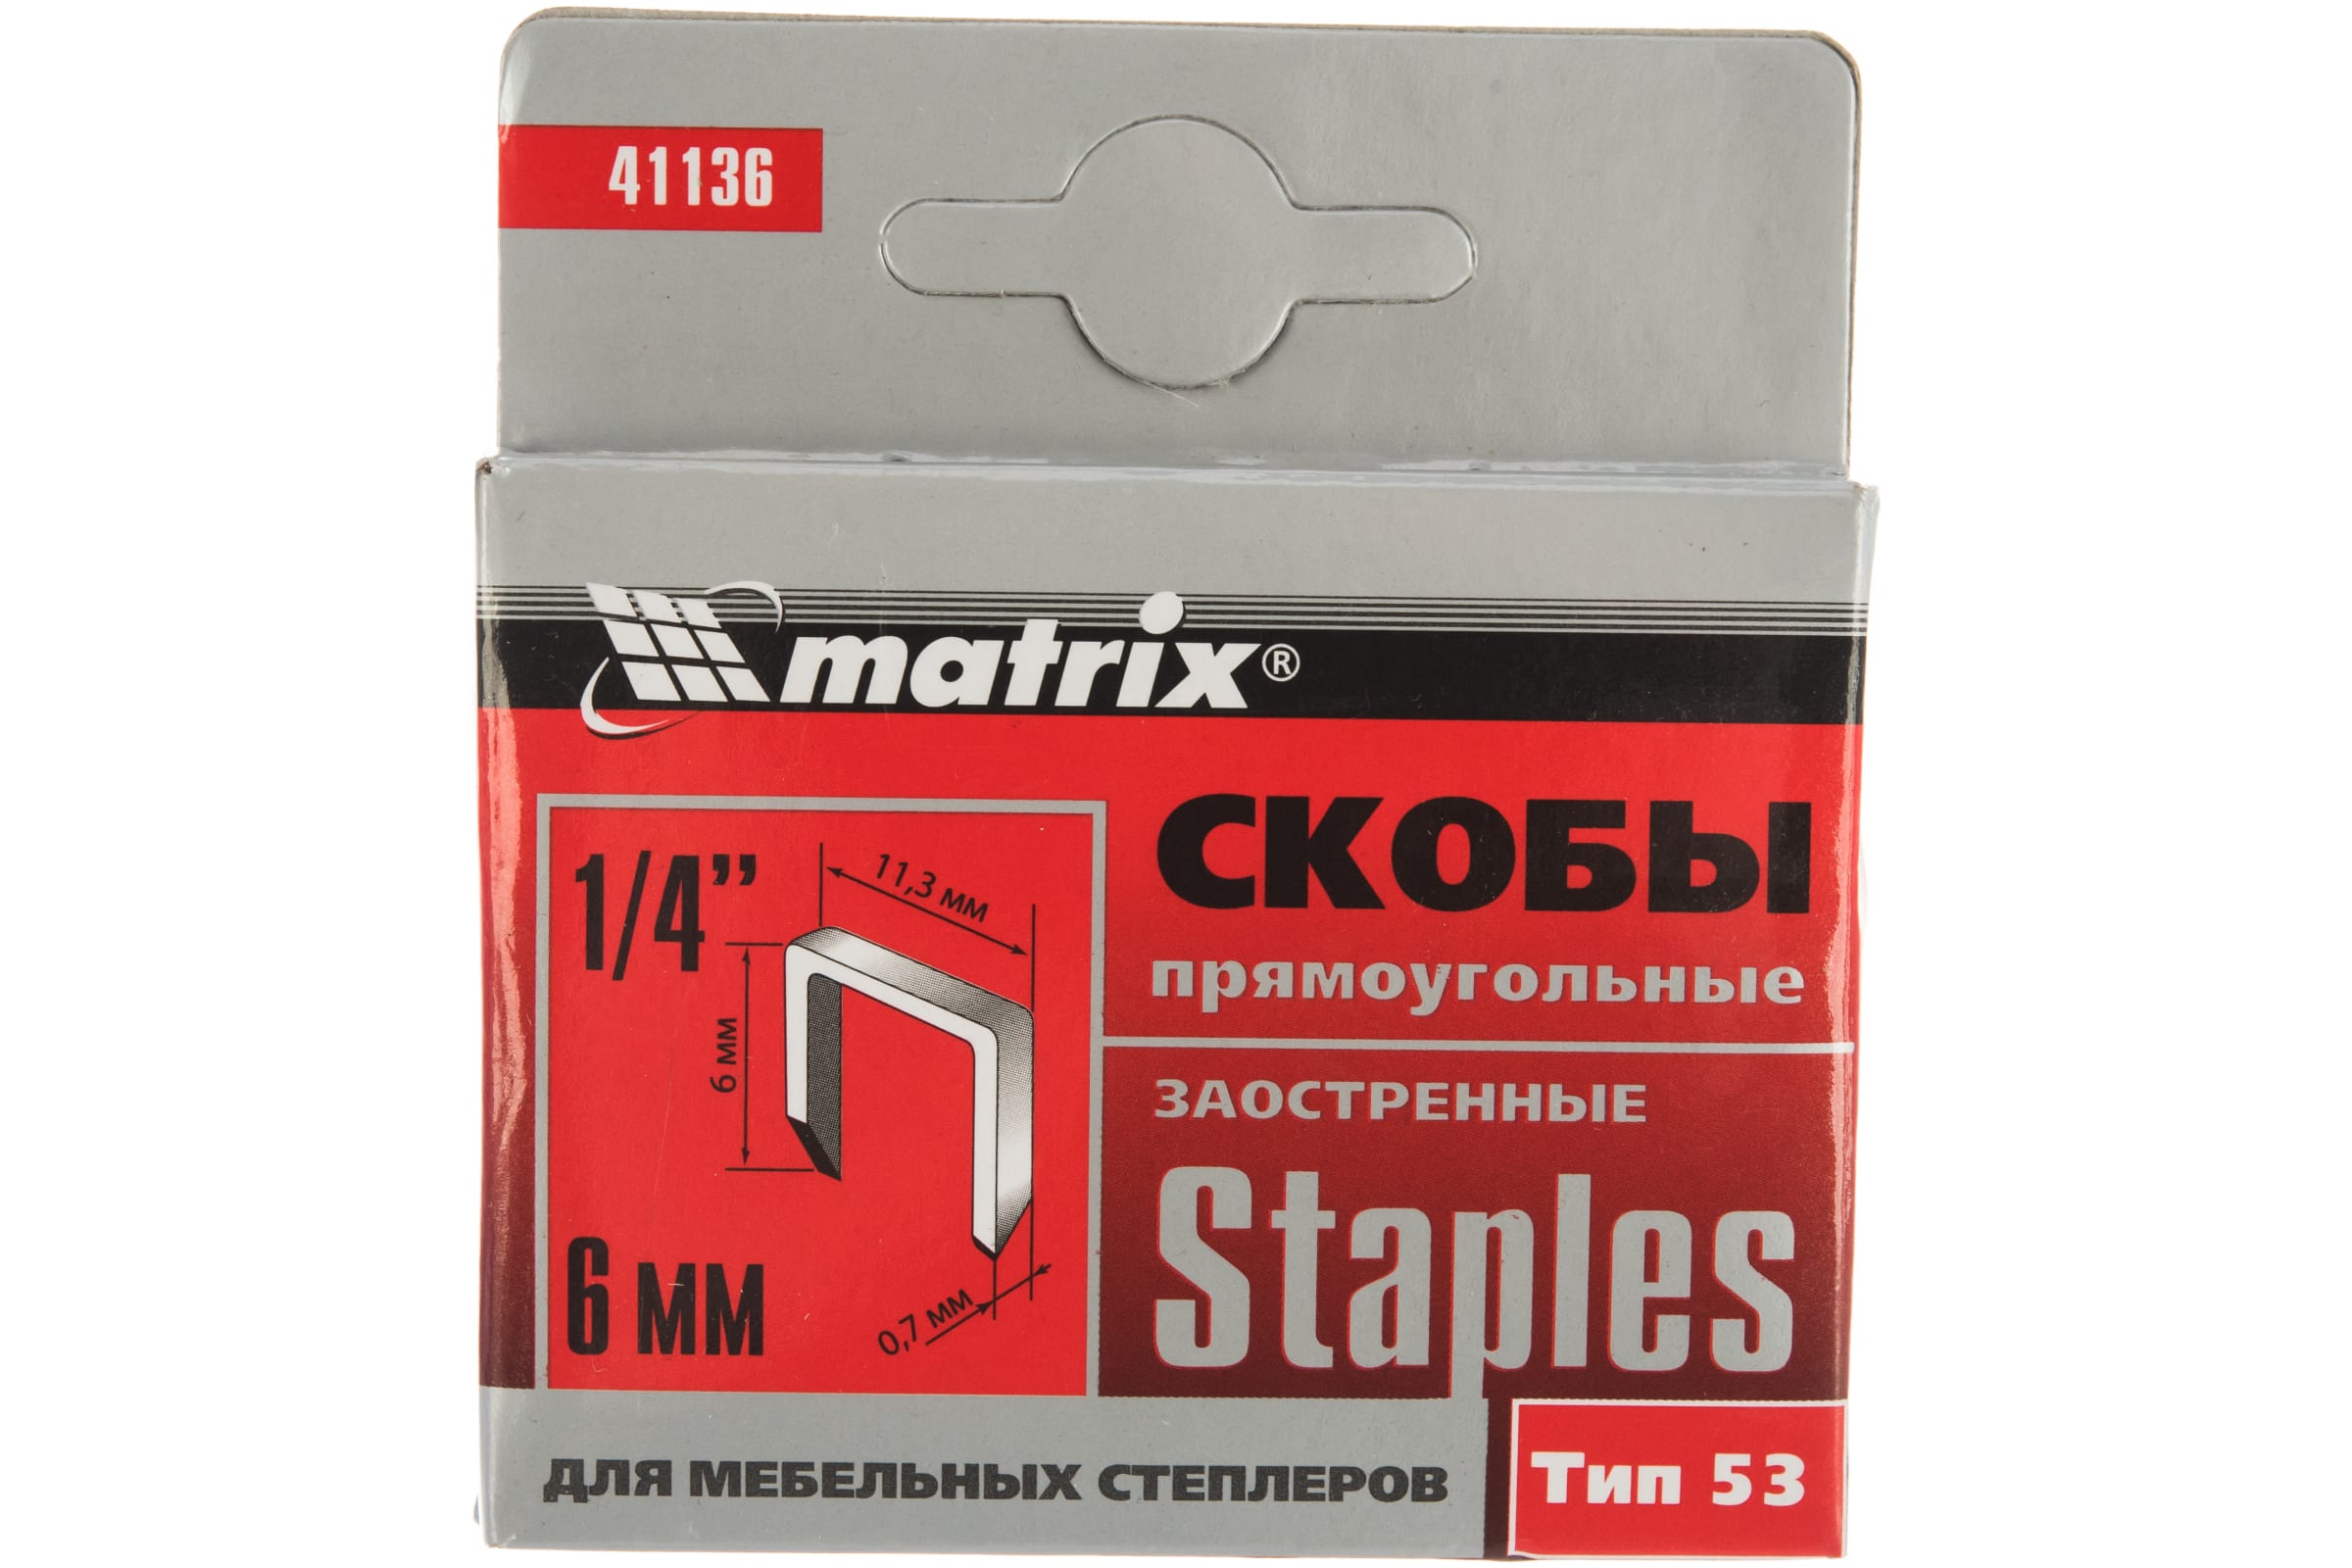 Скобы для электростеплера MATRIX 41136 скобы для электростеплера matrix 41212